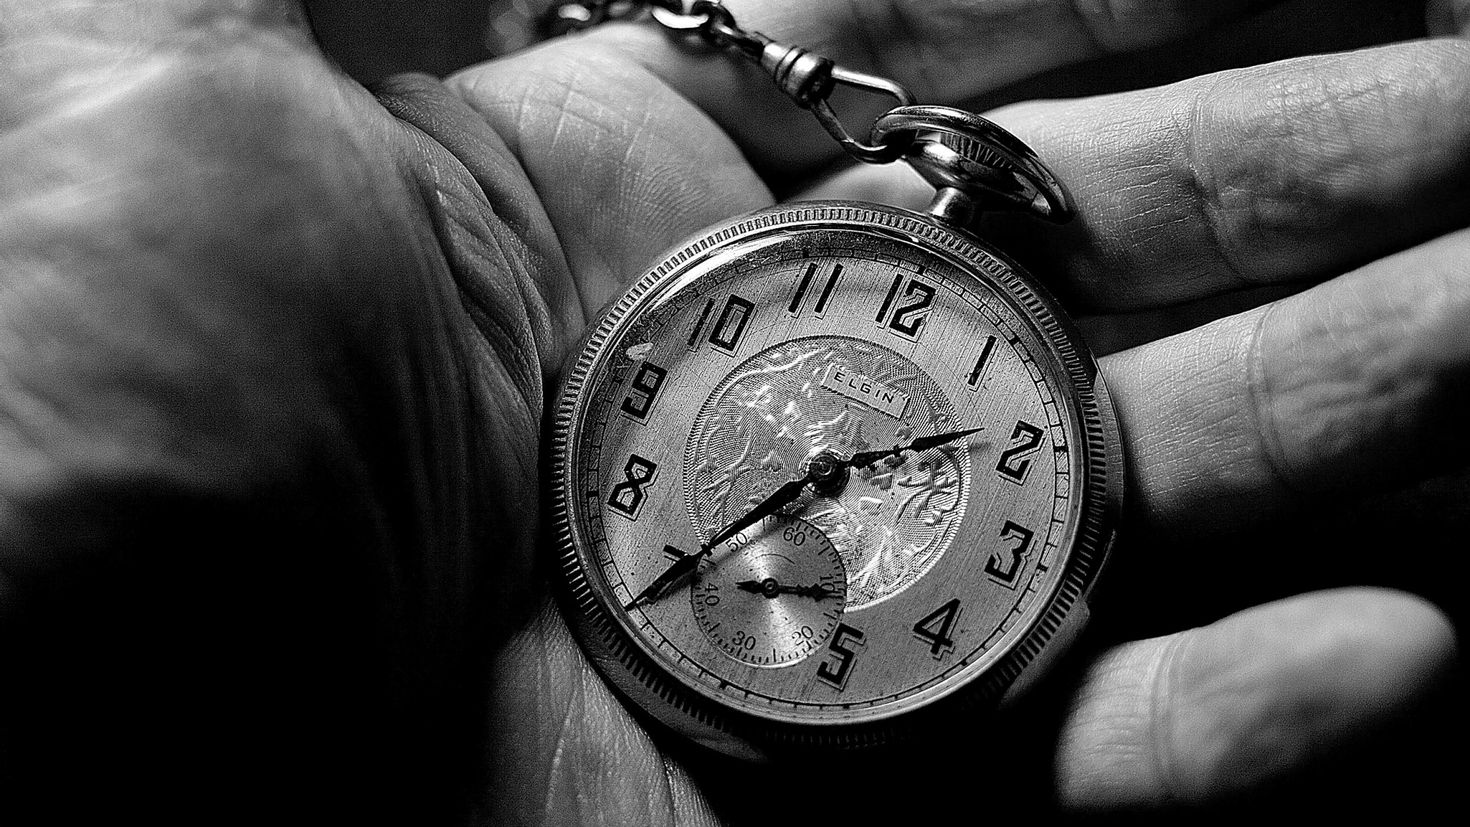 Картинка время первых. Карманные часы в руке. Старые часы на руку. Красивые высказывания о времени. Часы на цепочке.